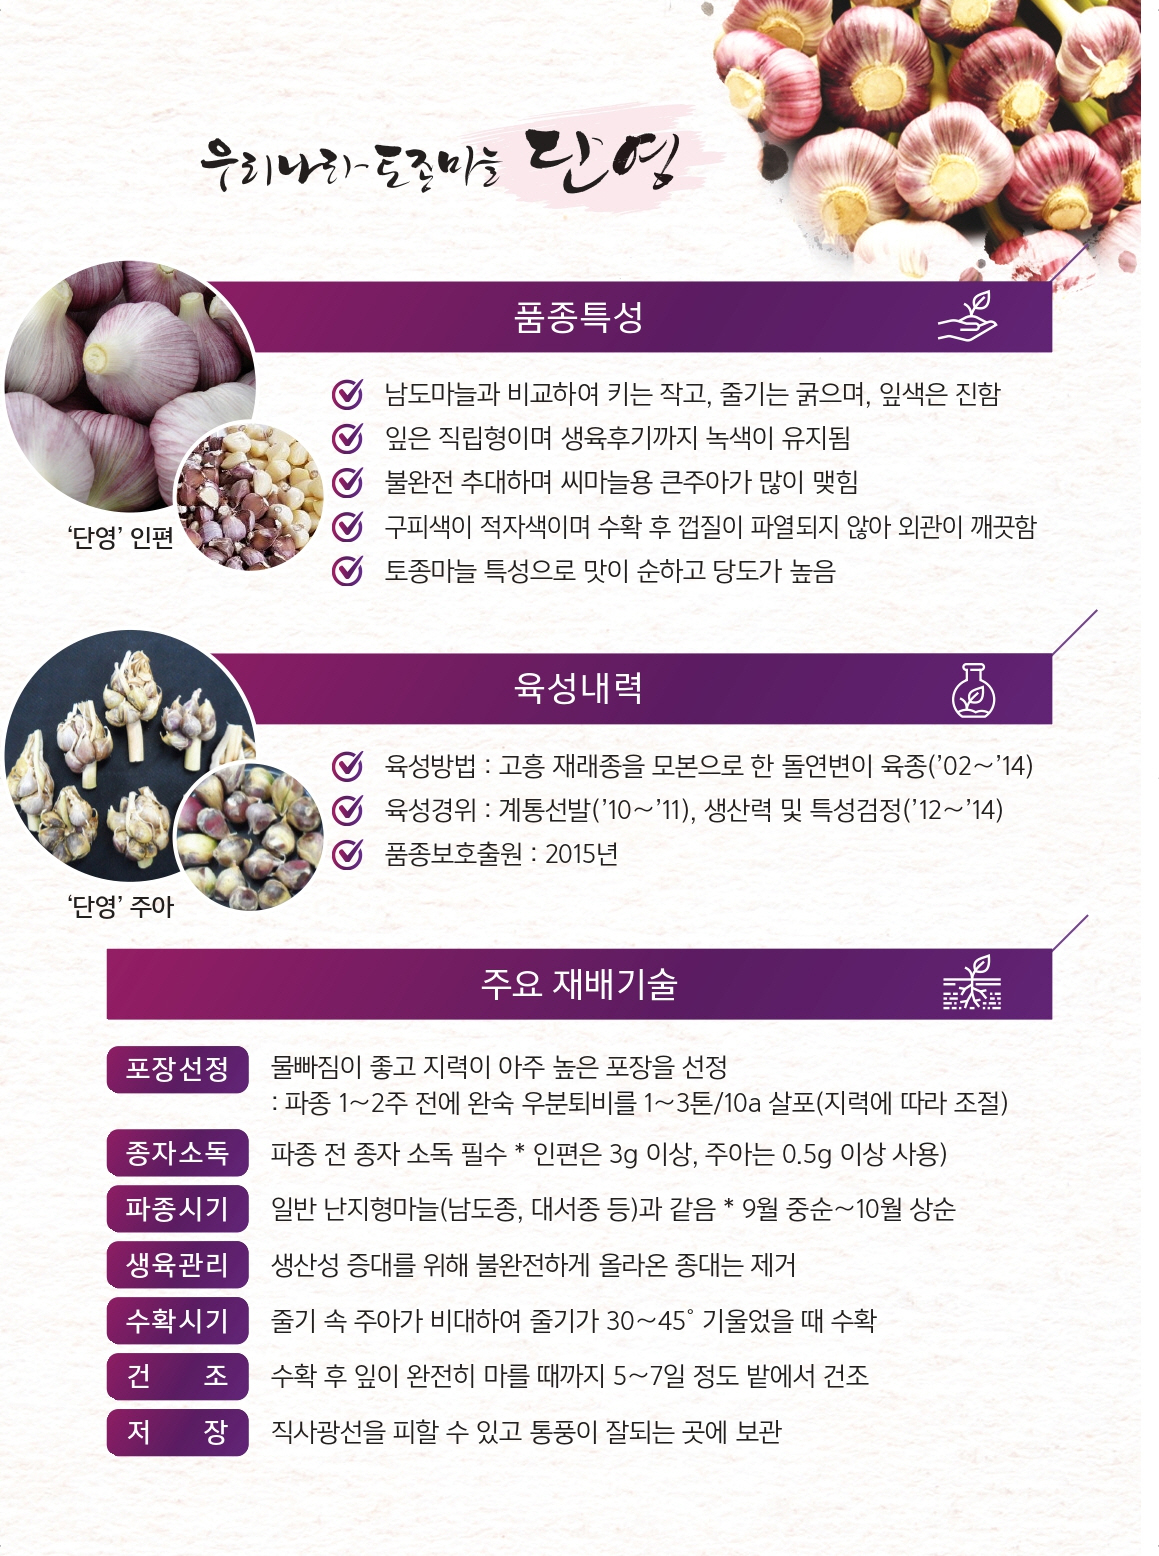 마늘 제초제 안전사용 방법 및 단영마늘 소개 첨부#3